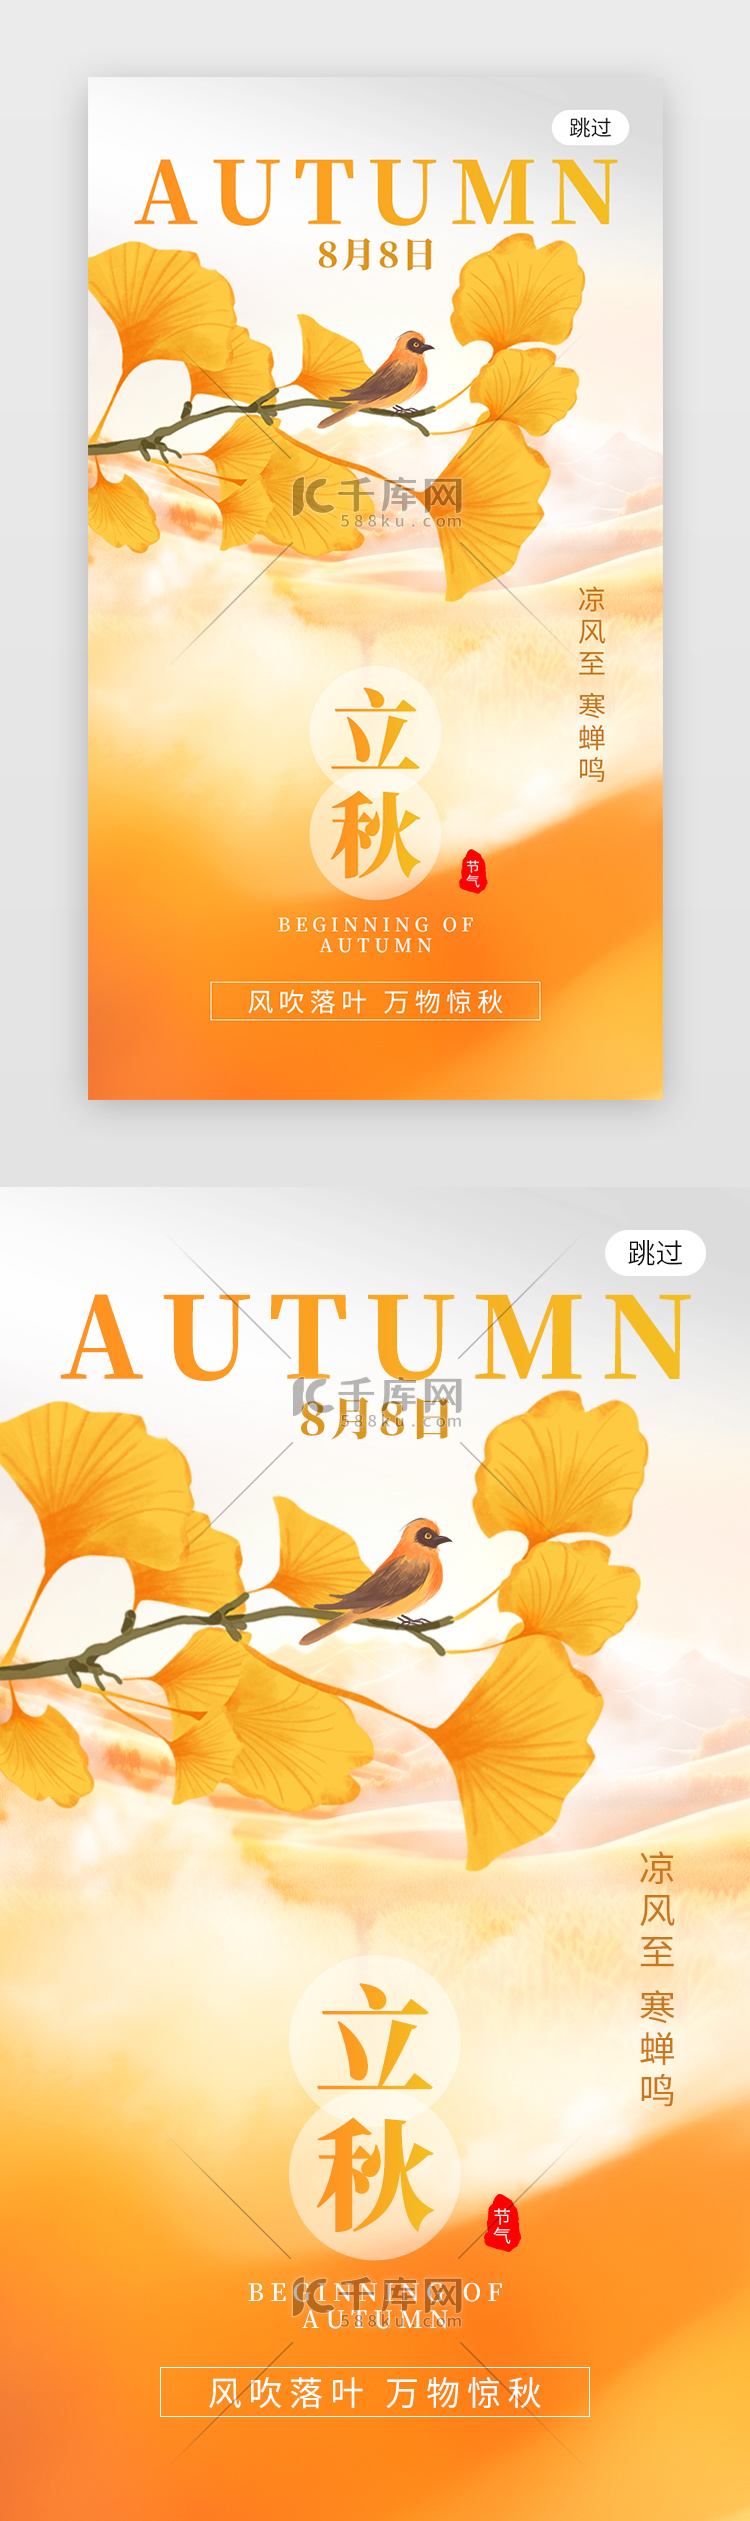 二十四节气立秋app闪屏创意橙黄色银杏叶